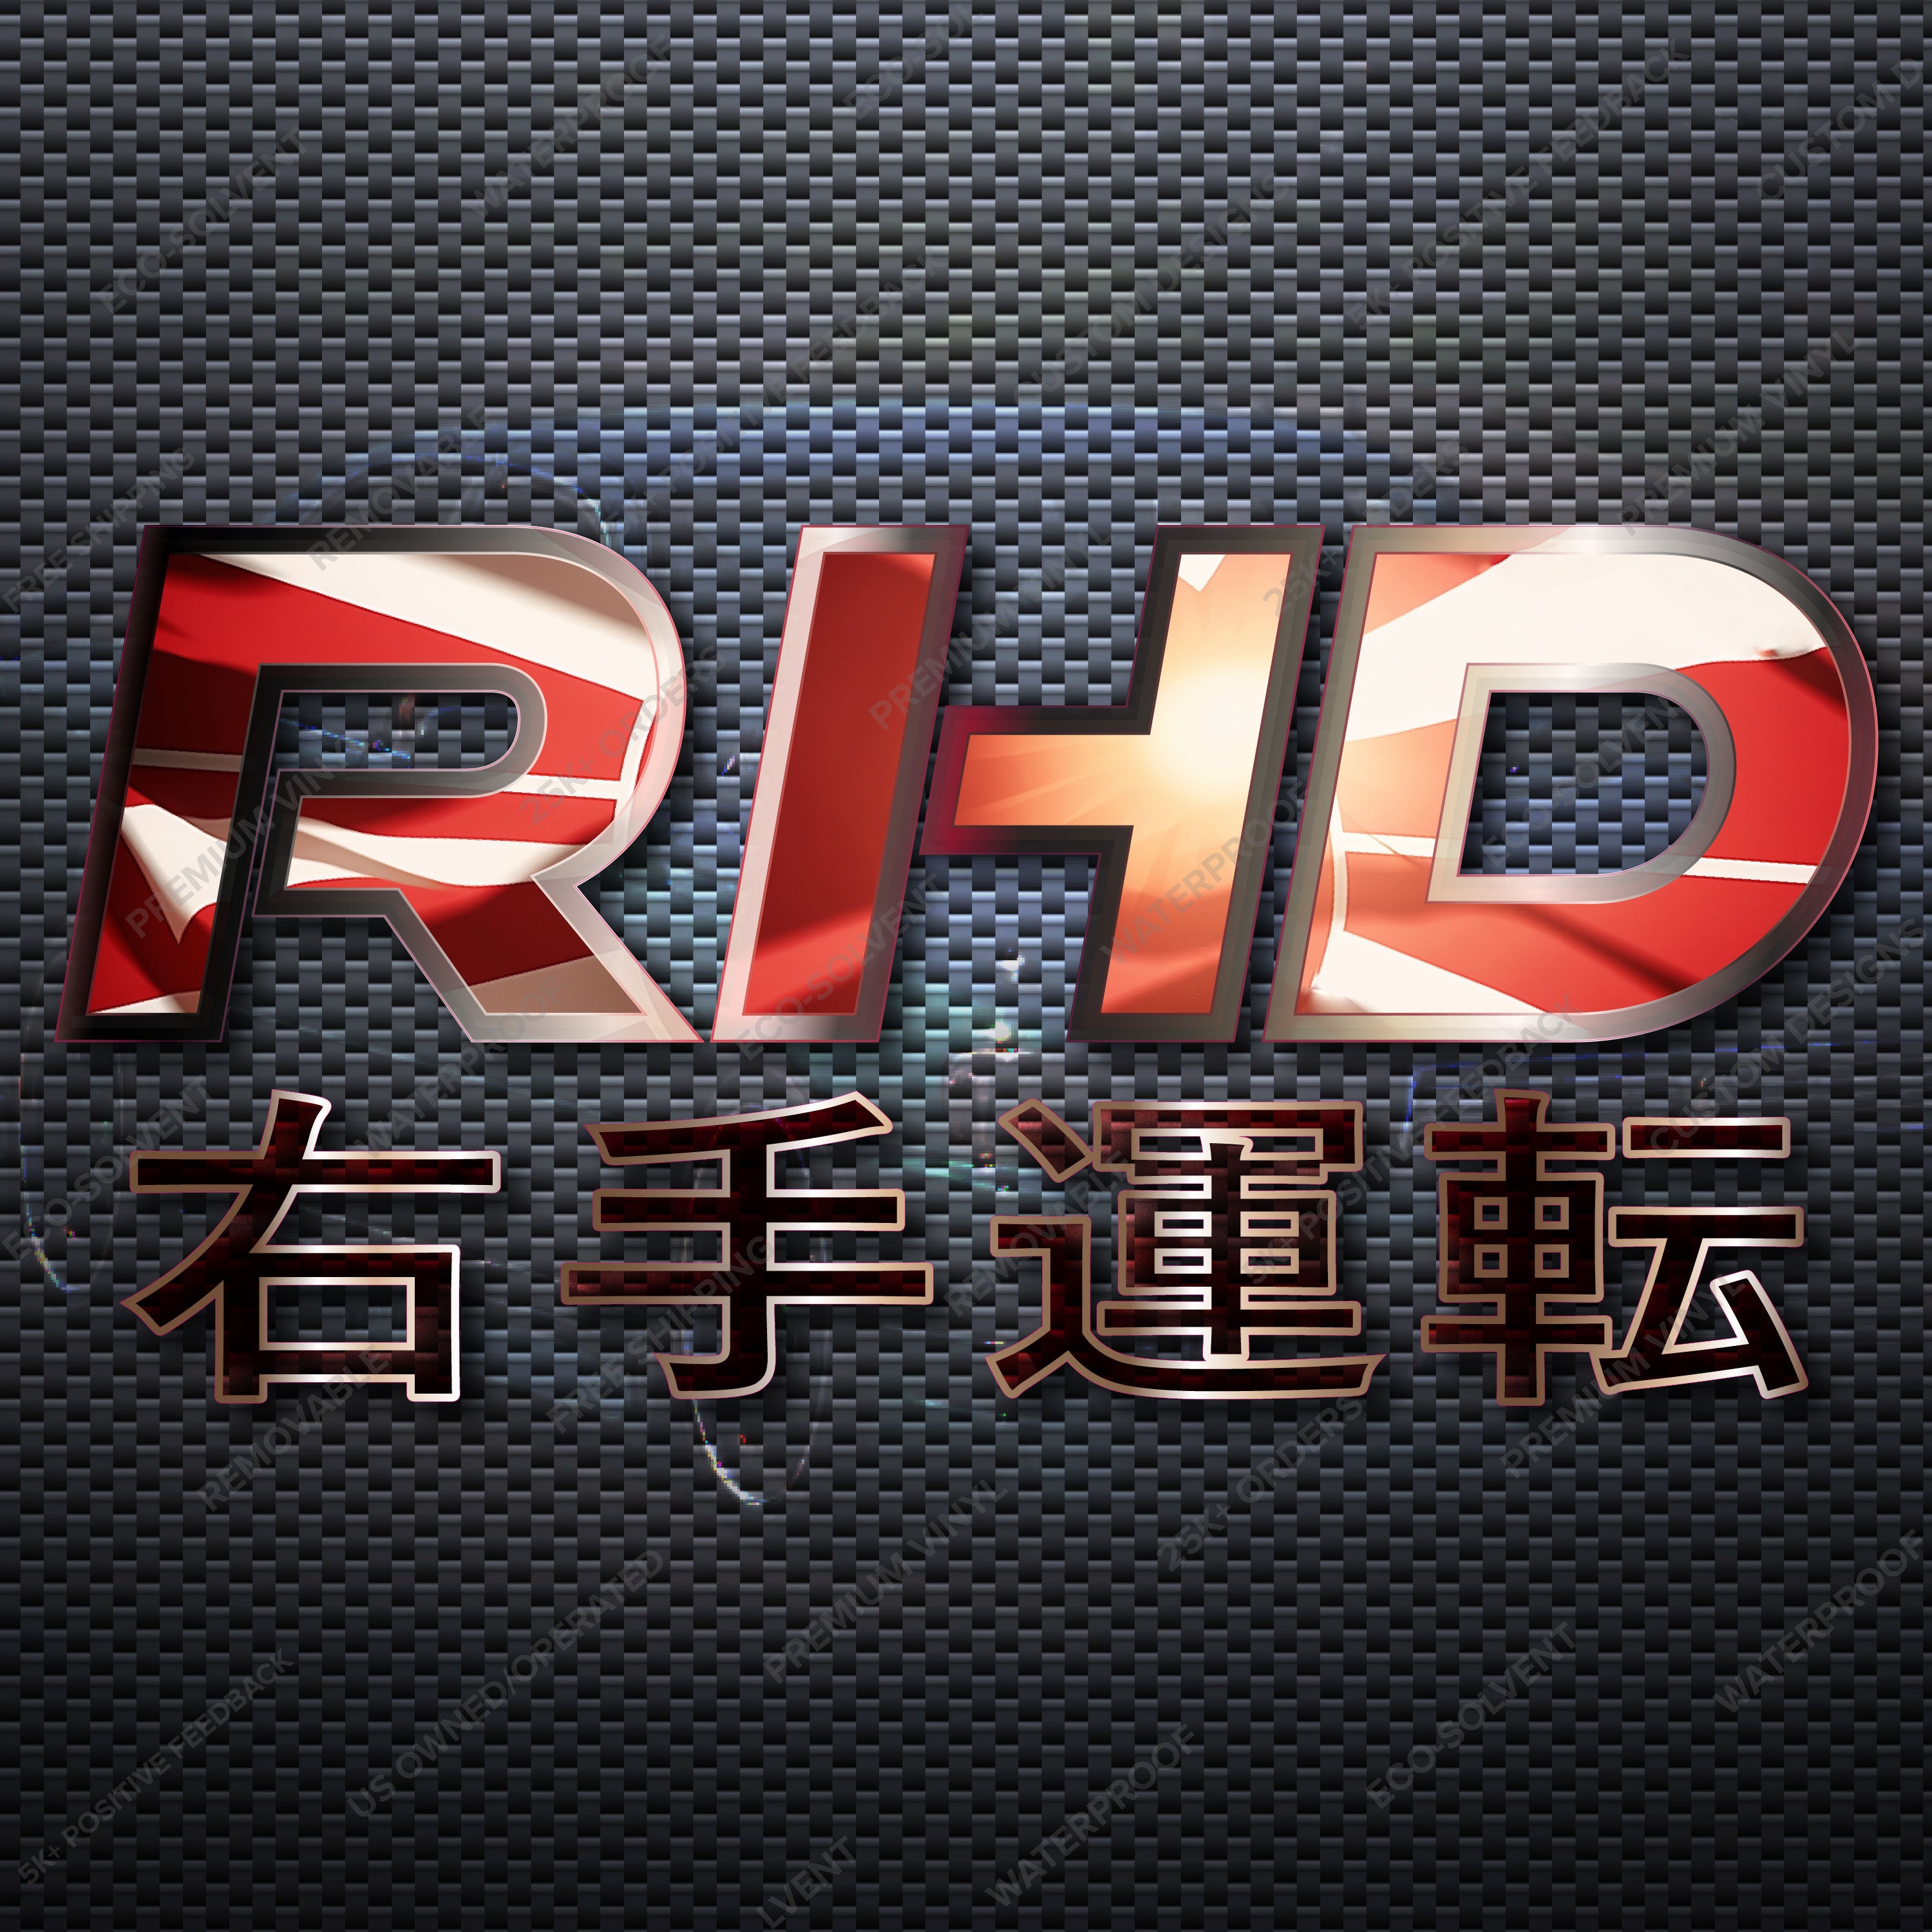 Buy Rhd Online In India Etsy India